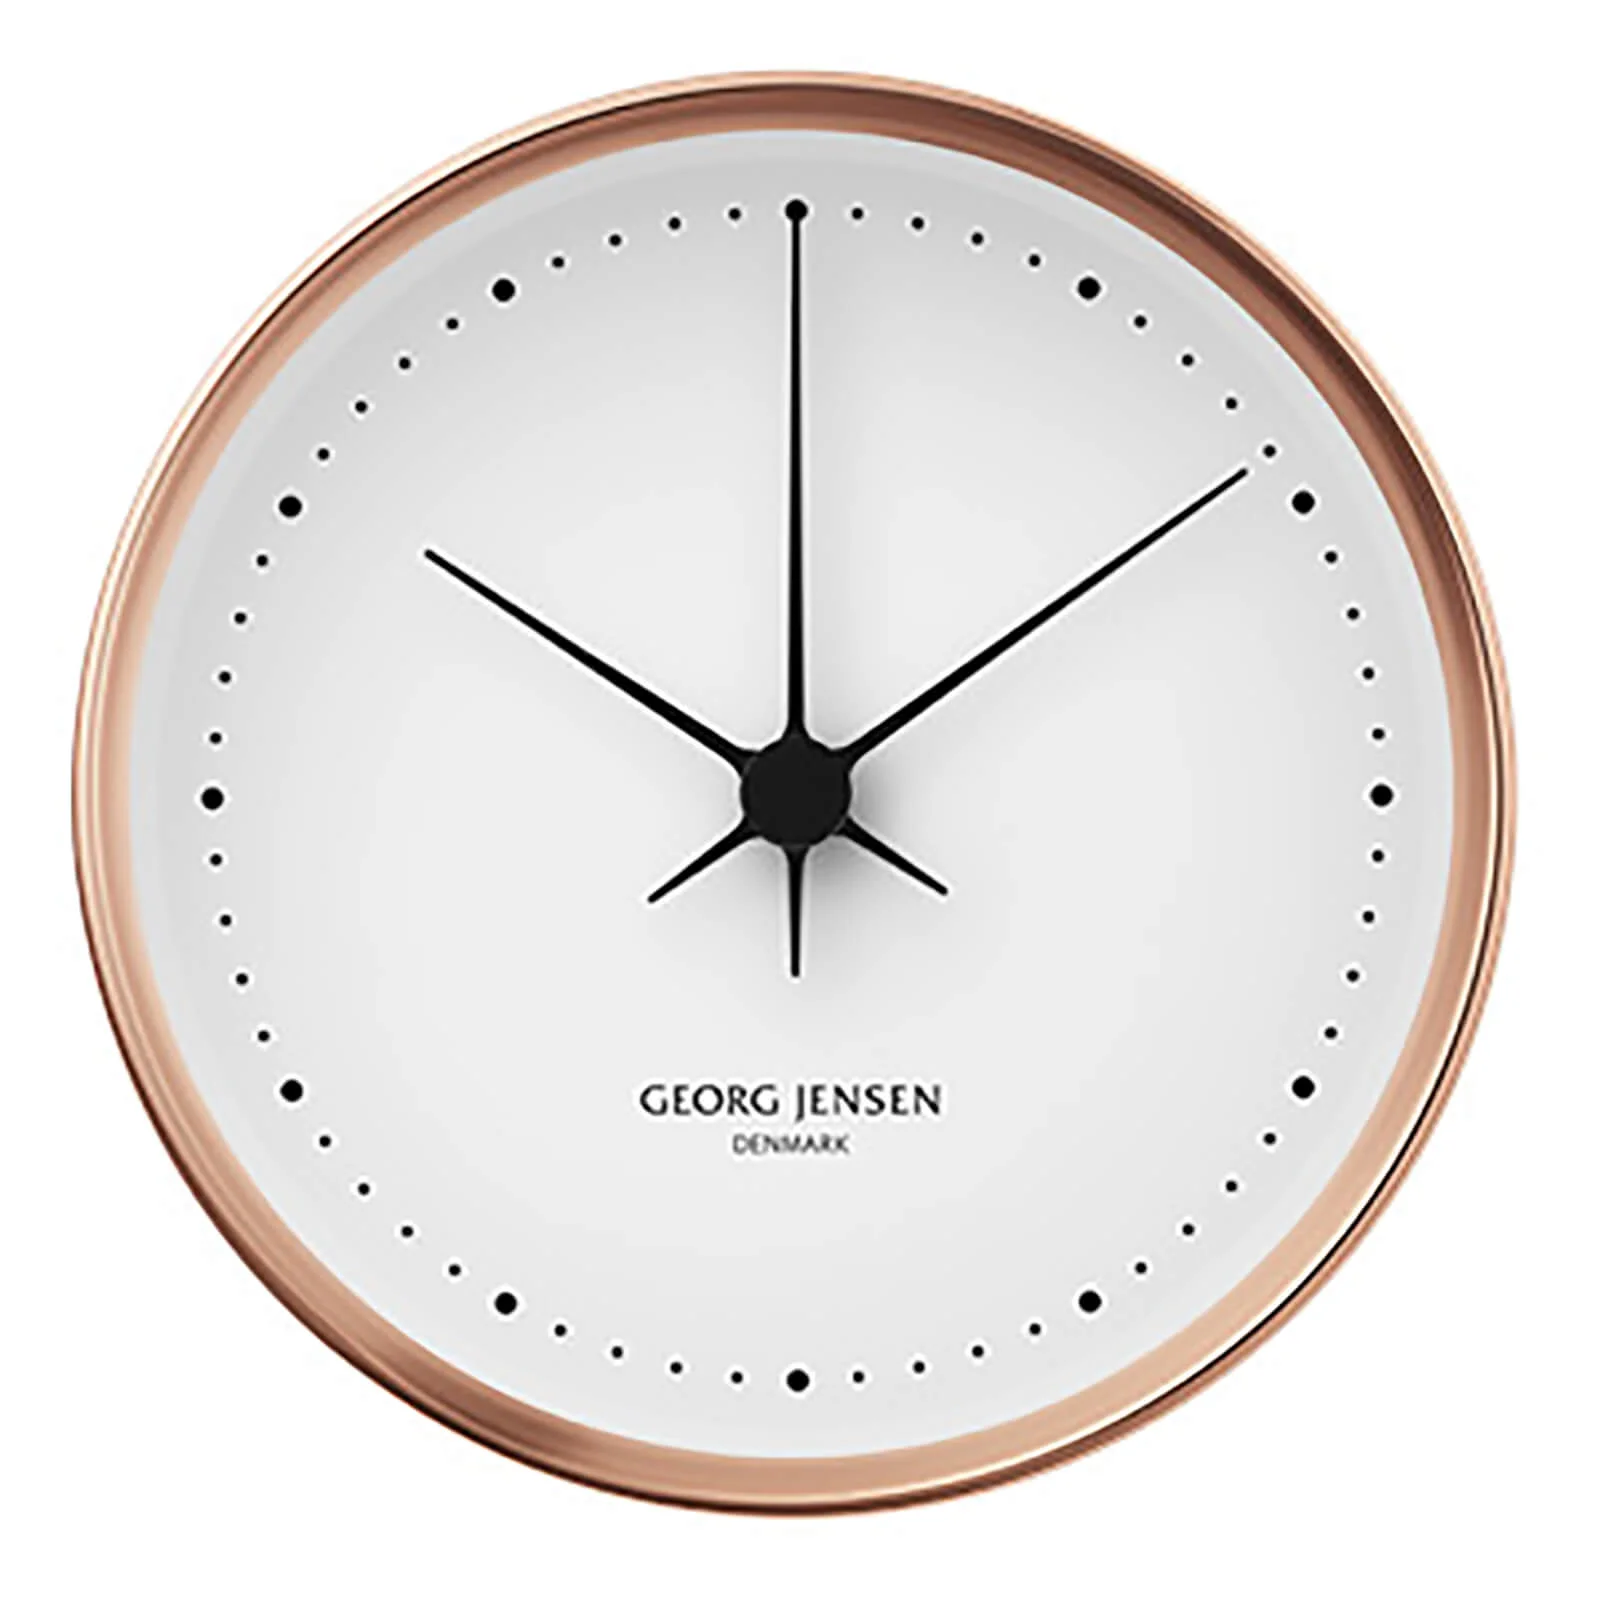 Georg Jensen Henning Koppel Clock - Copper & White - 22cm Image 1